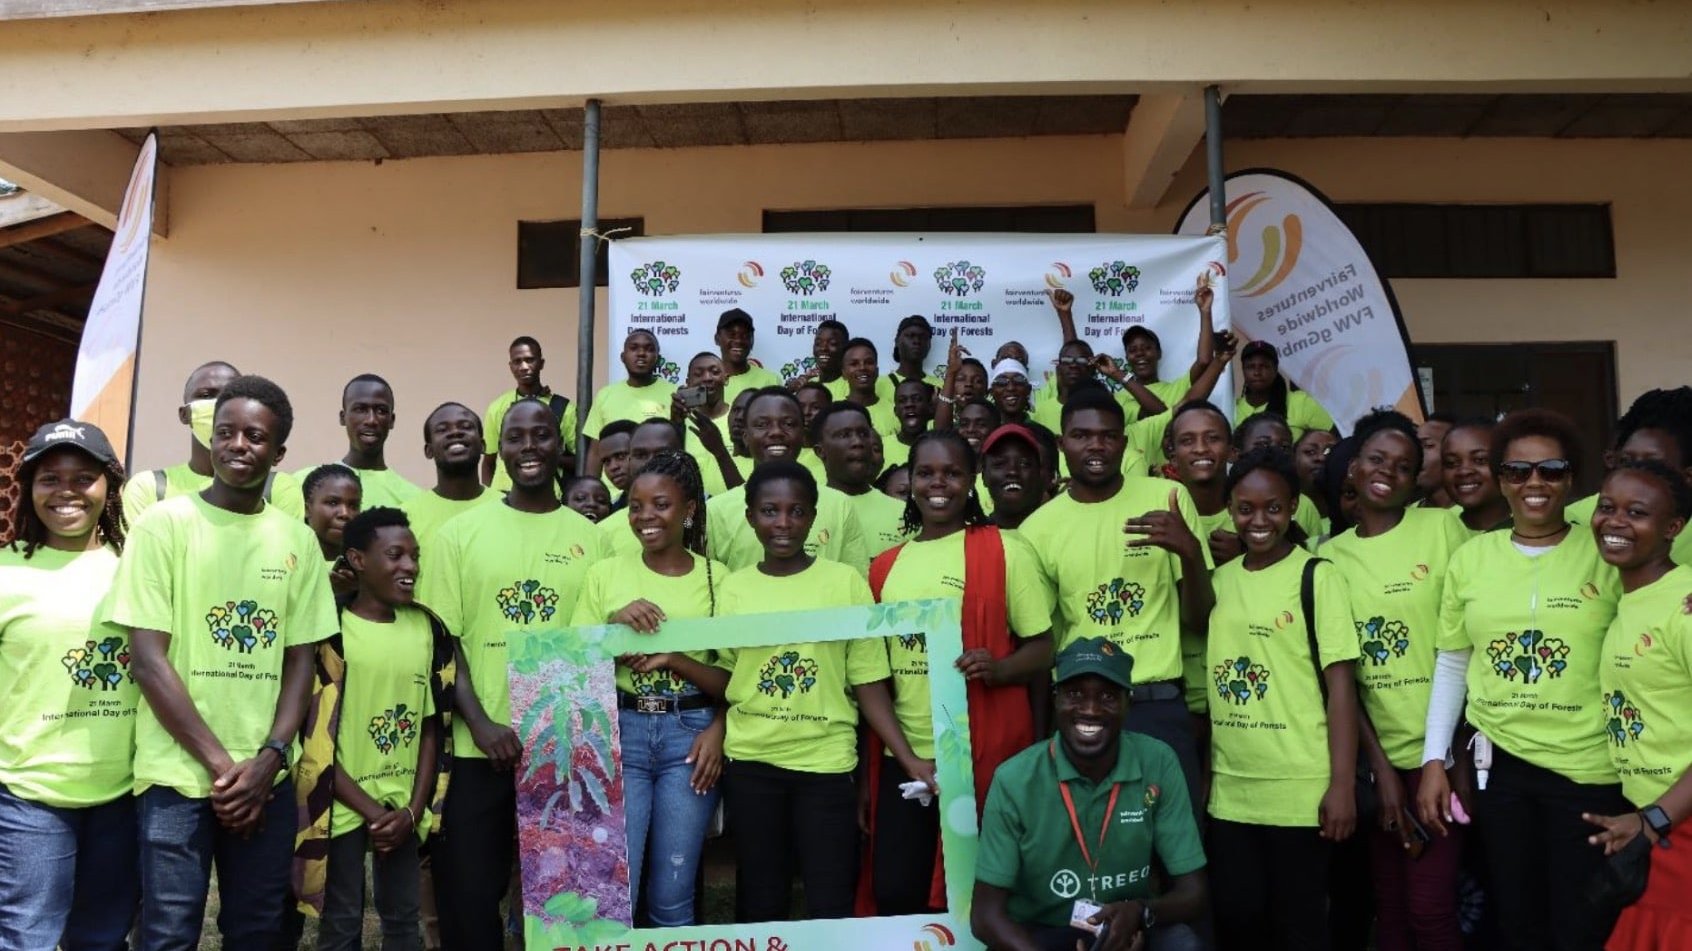 junge Menschengruppe in neongelben Projekt-T-Shirts posieren am internationalen Tag des Waldes